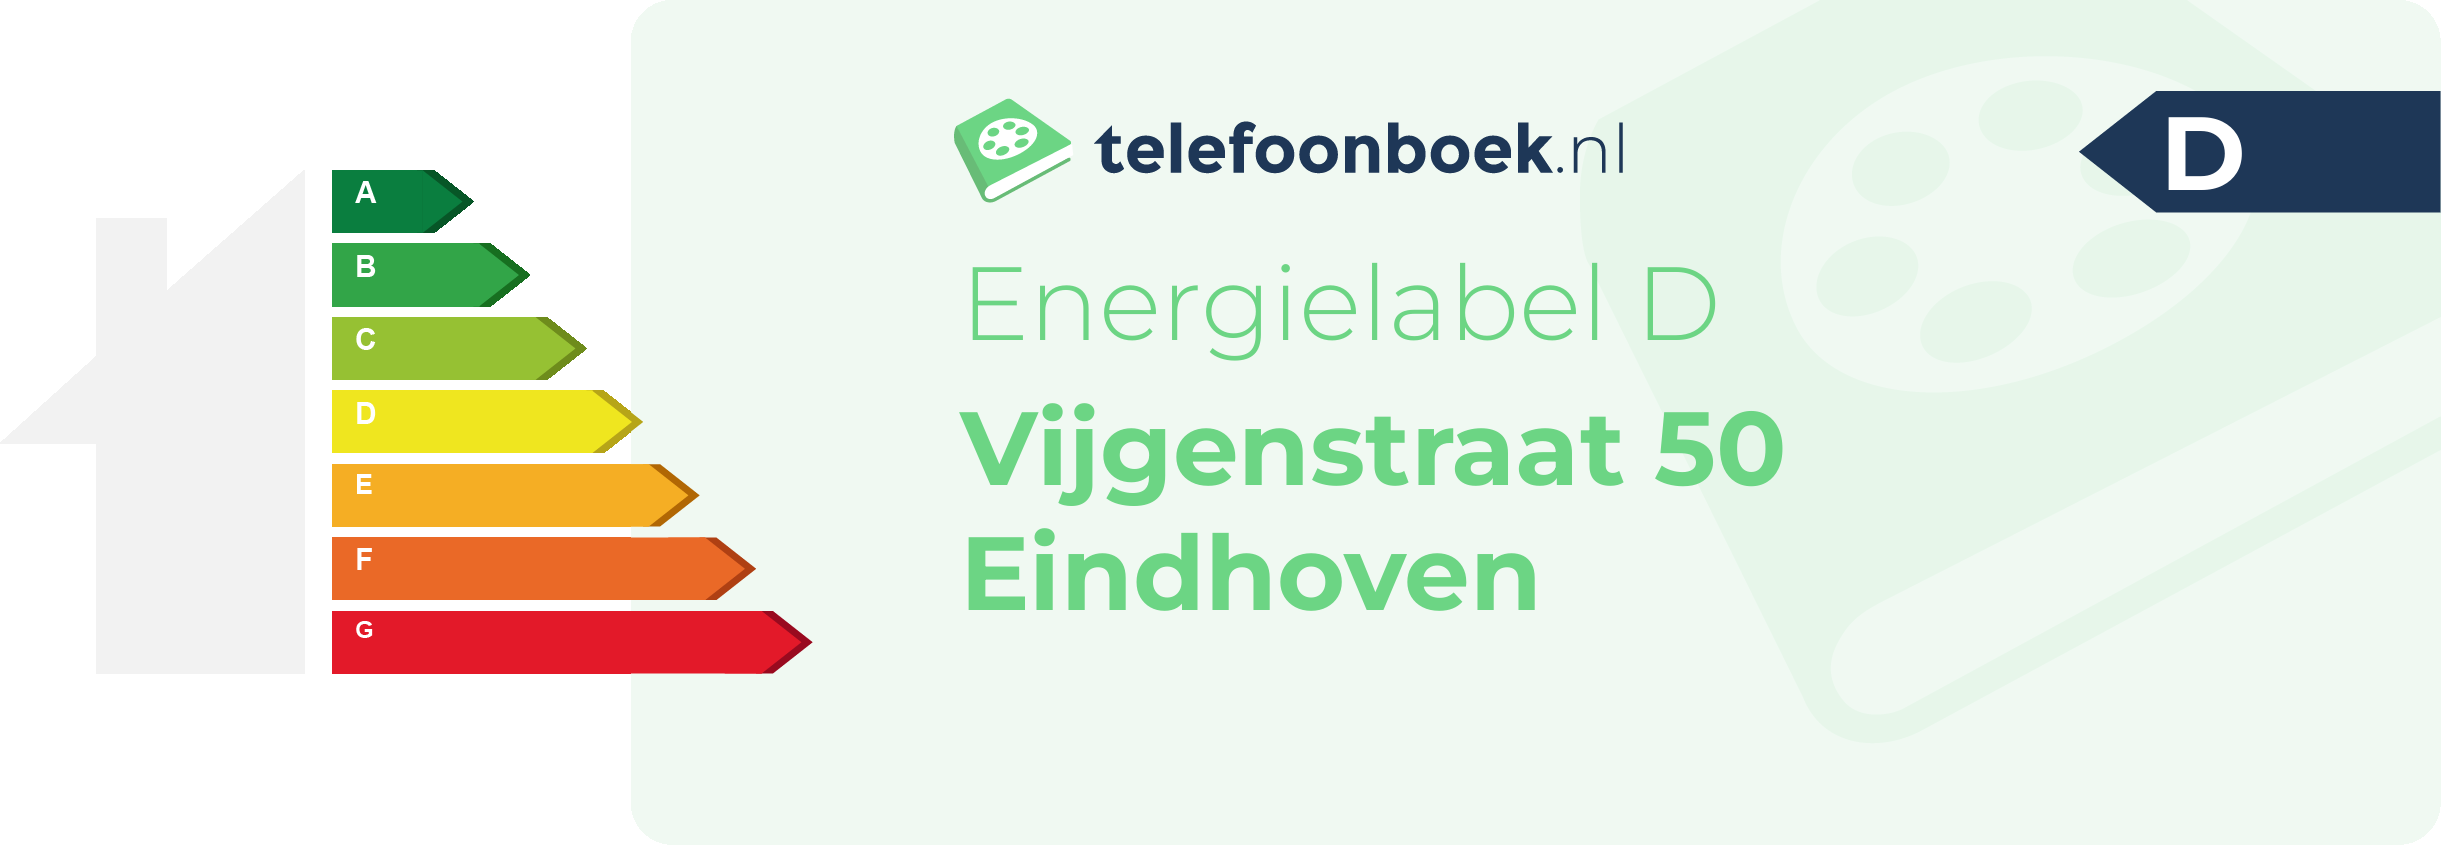 Energielabel Vijgenstraat 50 Eindhoven